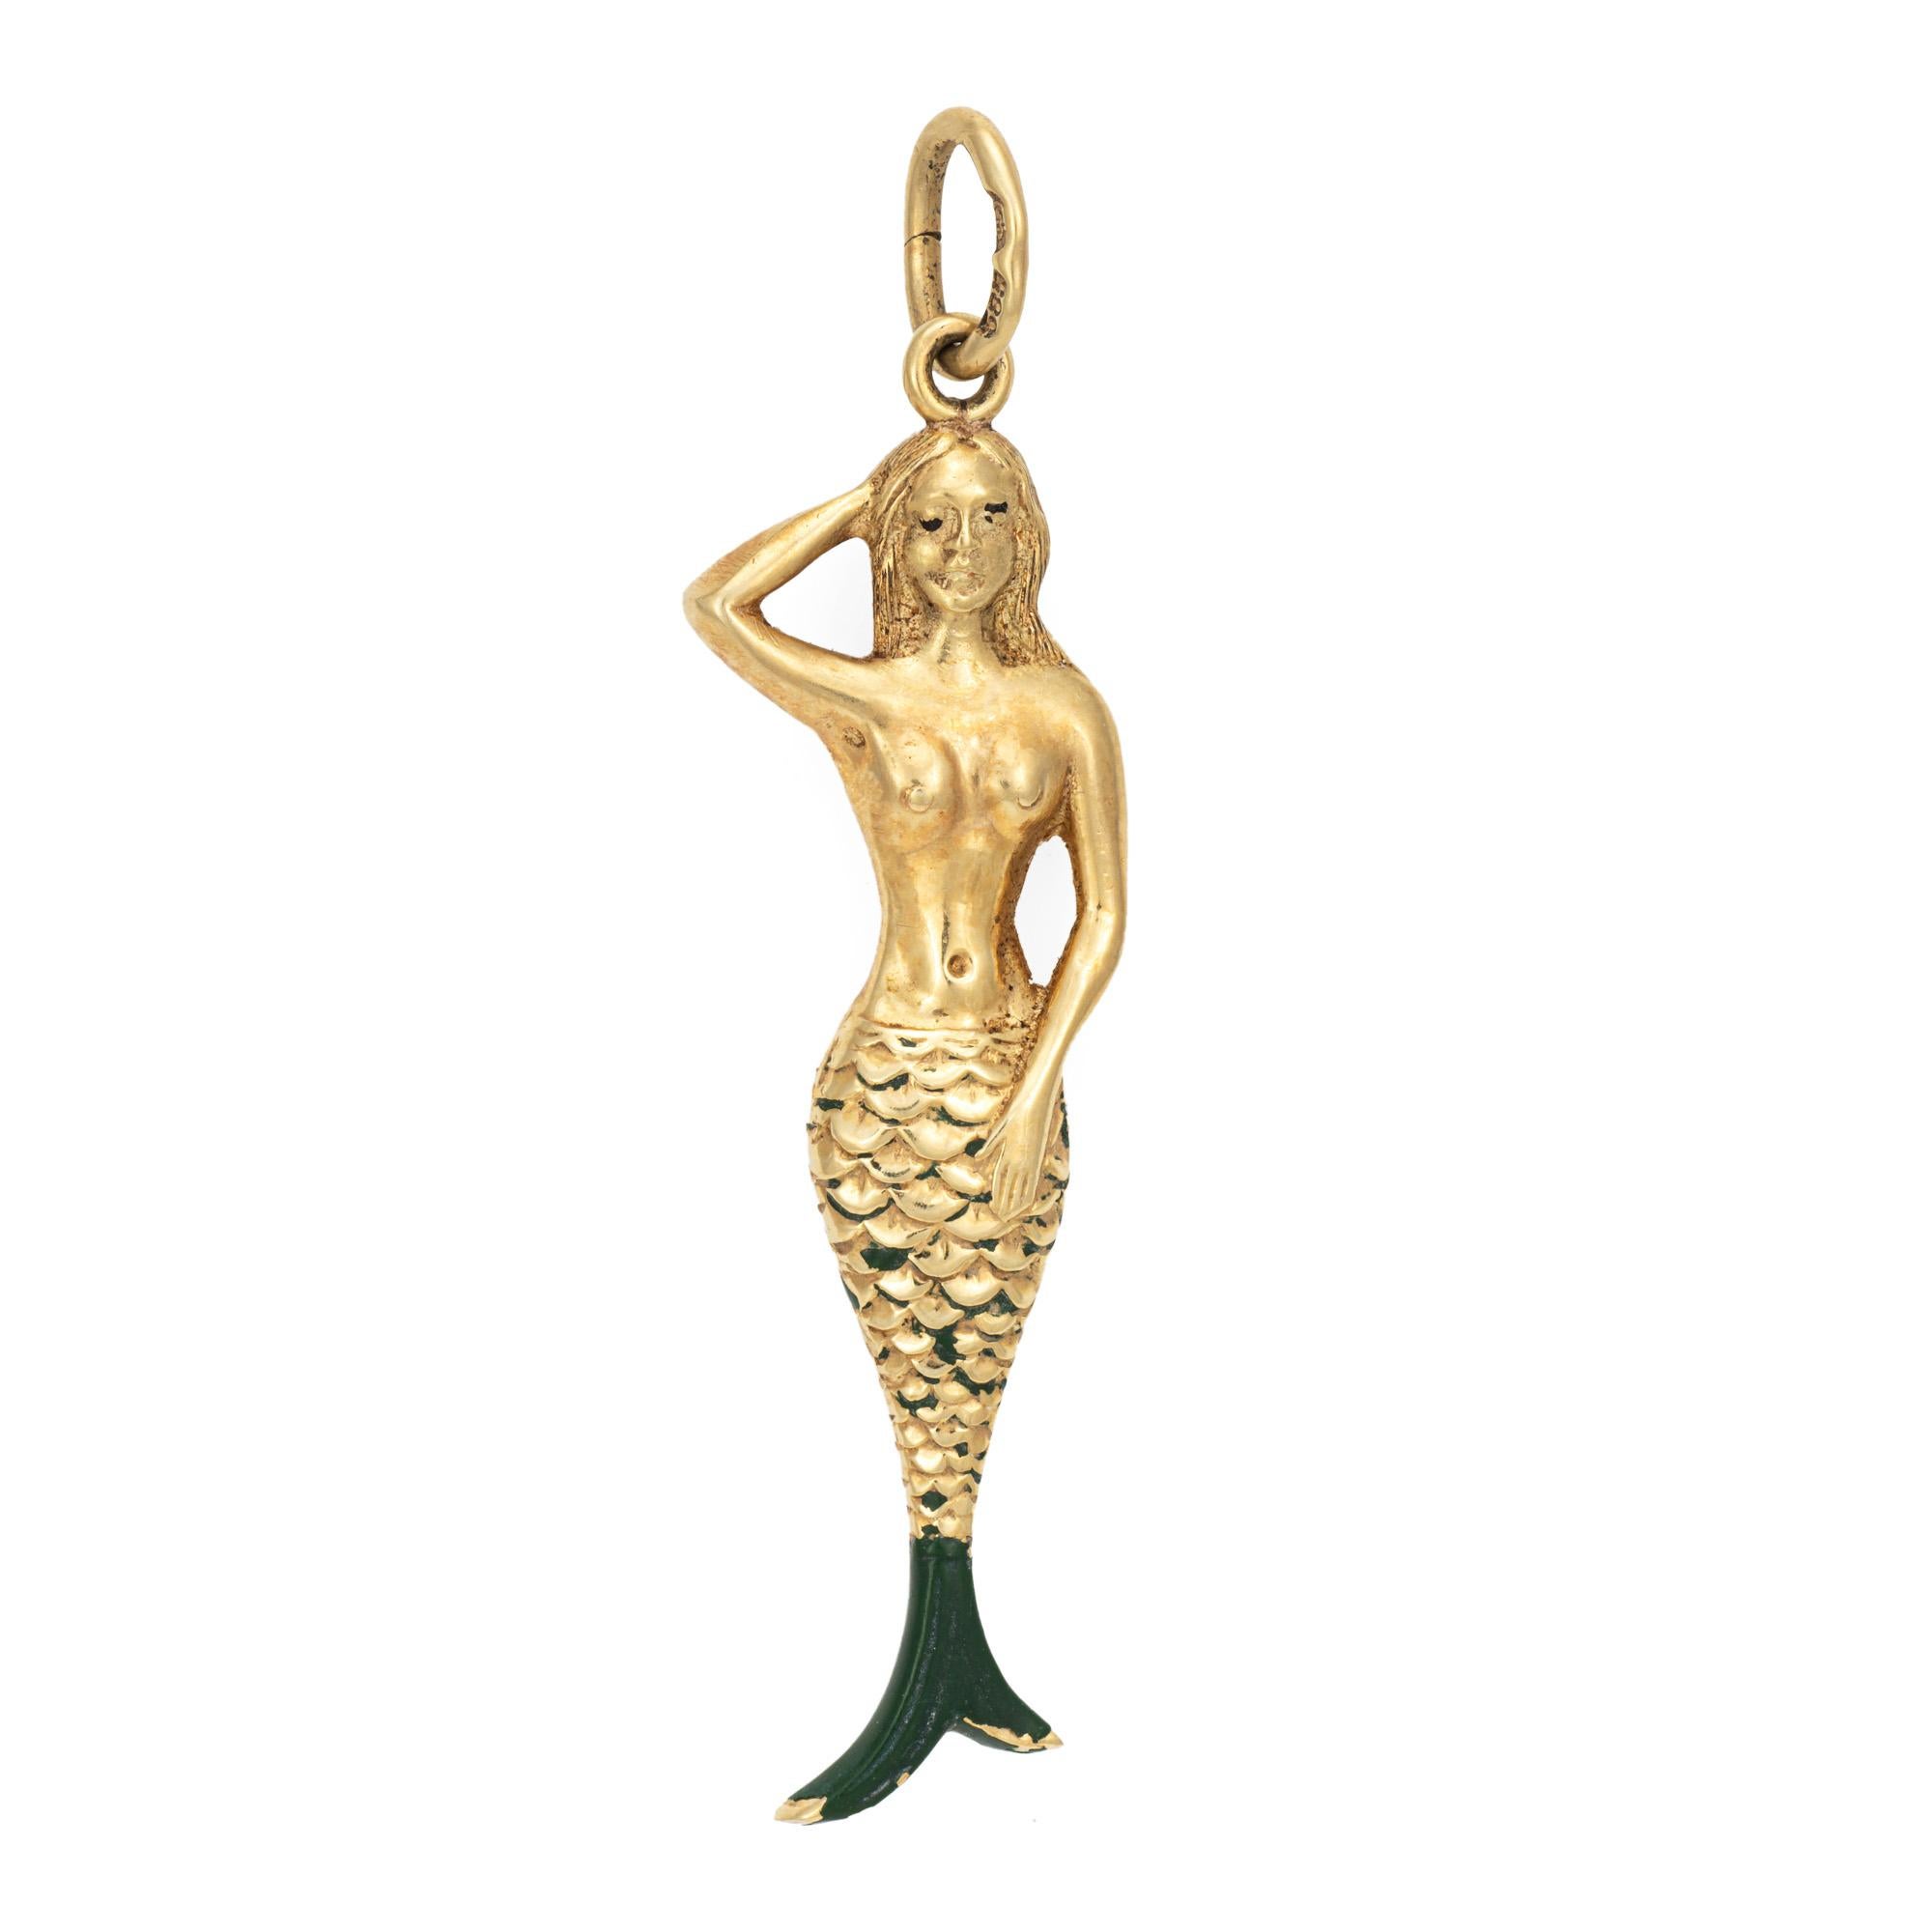 Modern Vintage Mermaid Charm 14k Yellow Gold Estate Fine Ocean Jewelry Green Enamel